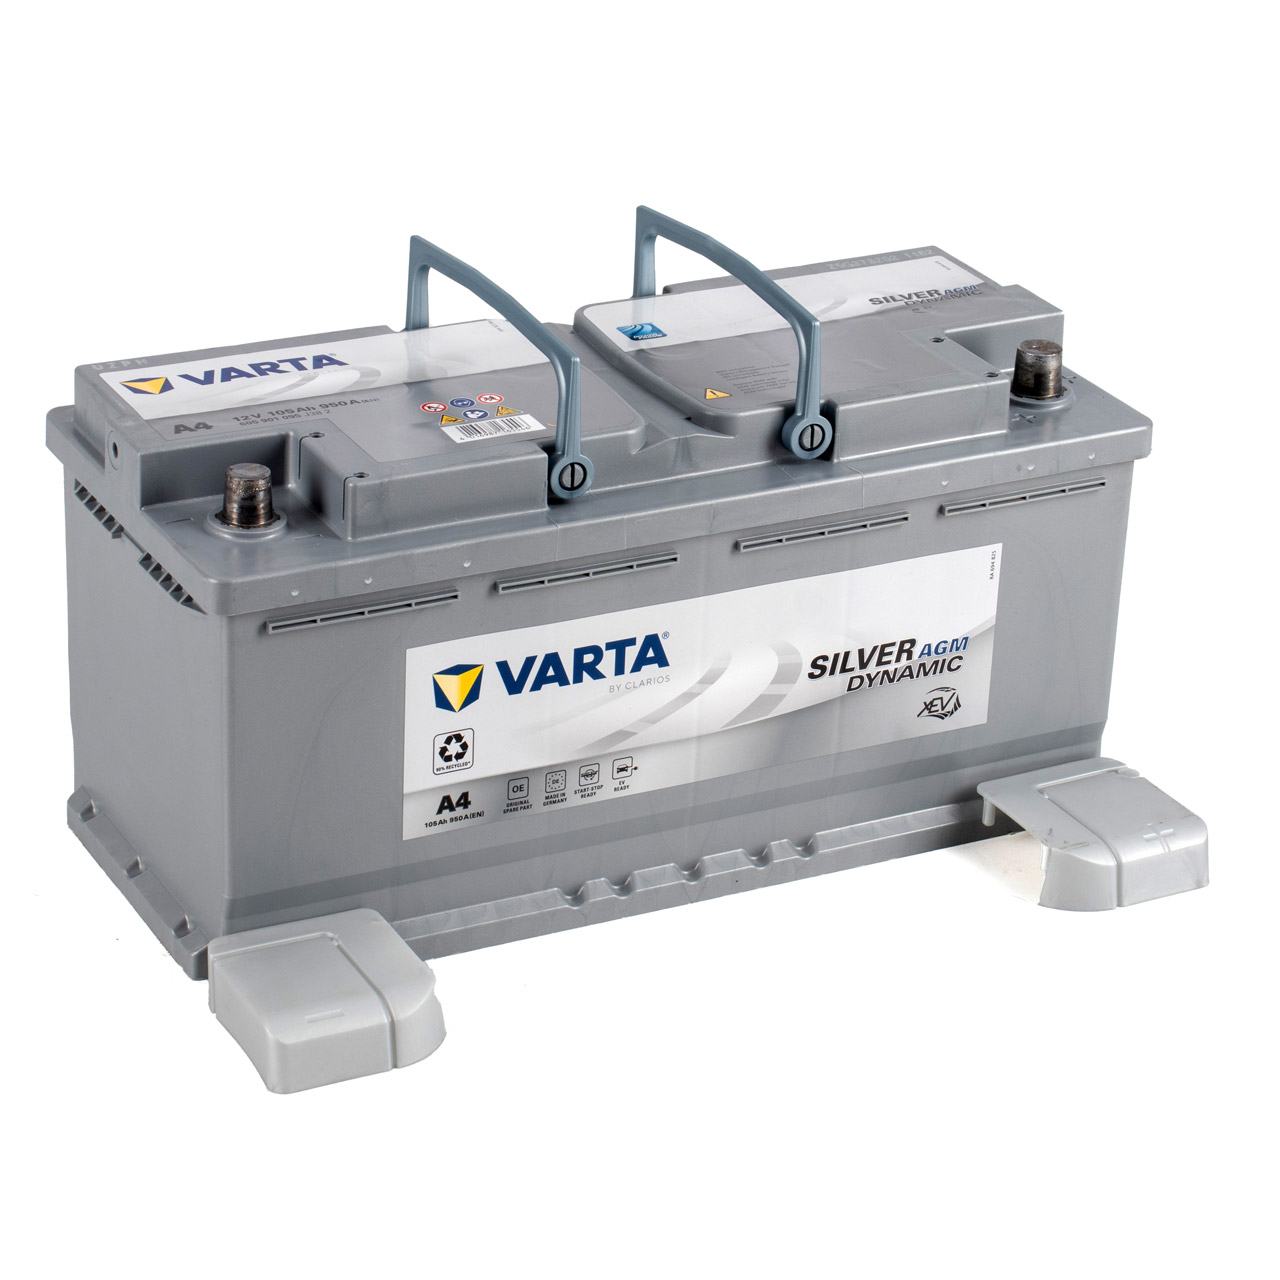 VARTA Starterbatterien / Autobatterien - 605901095D852 